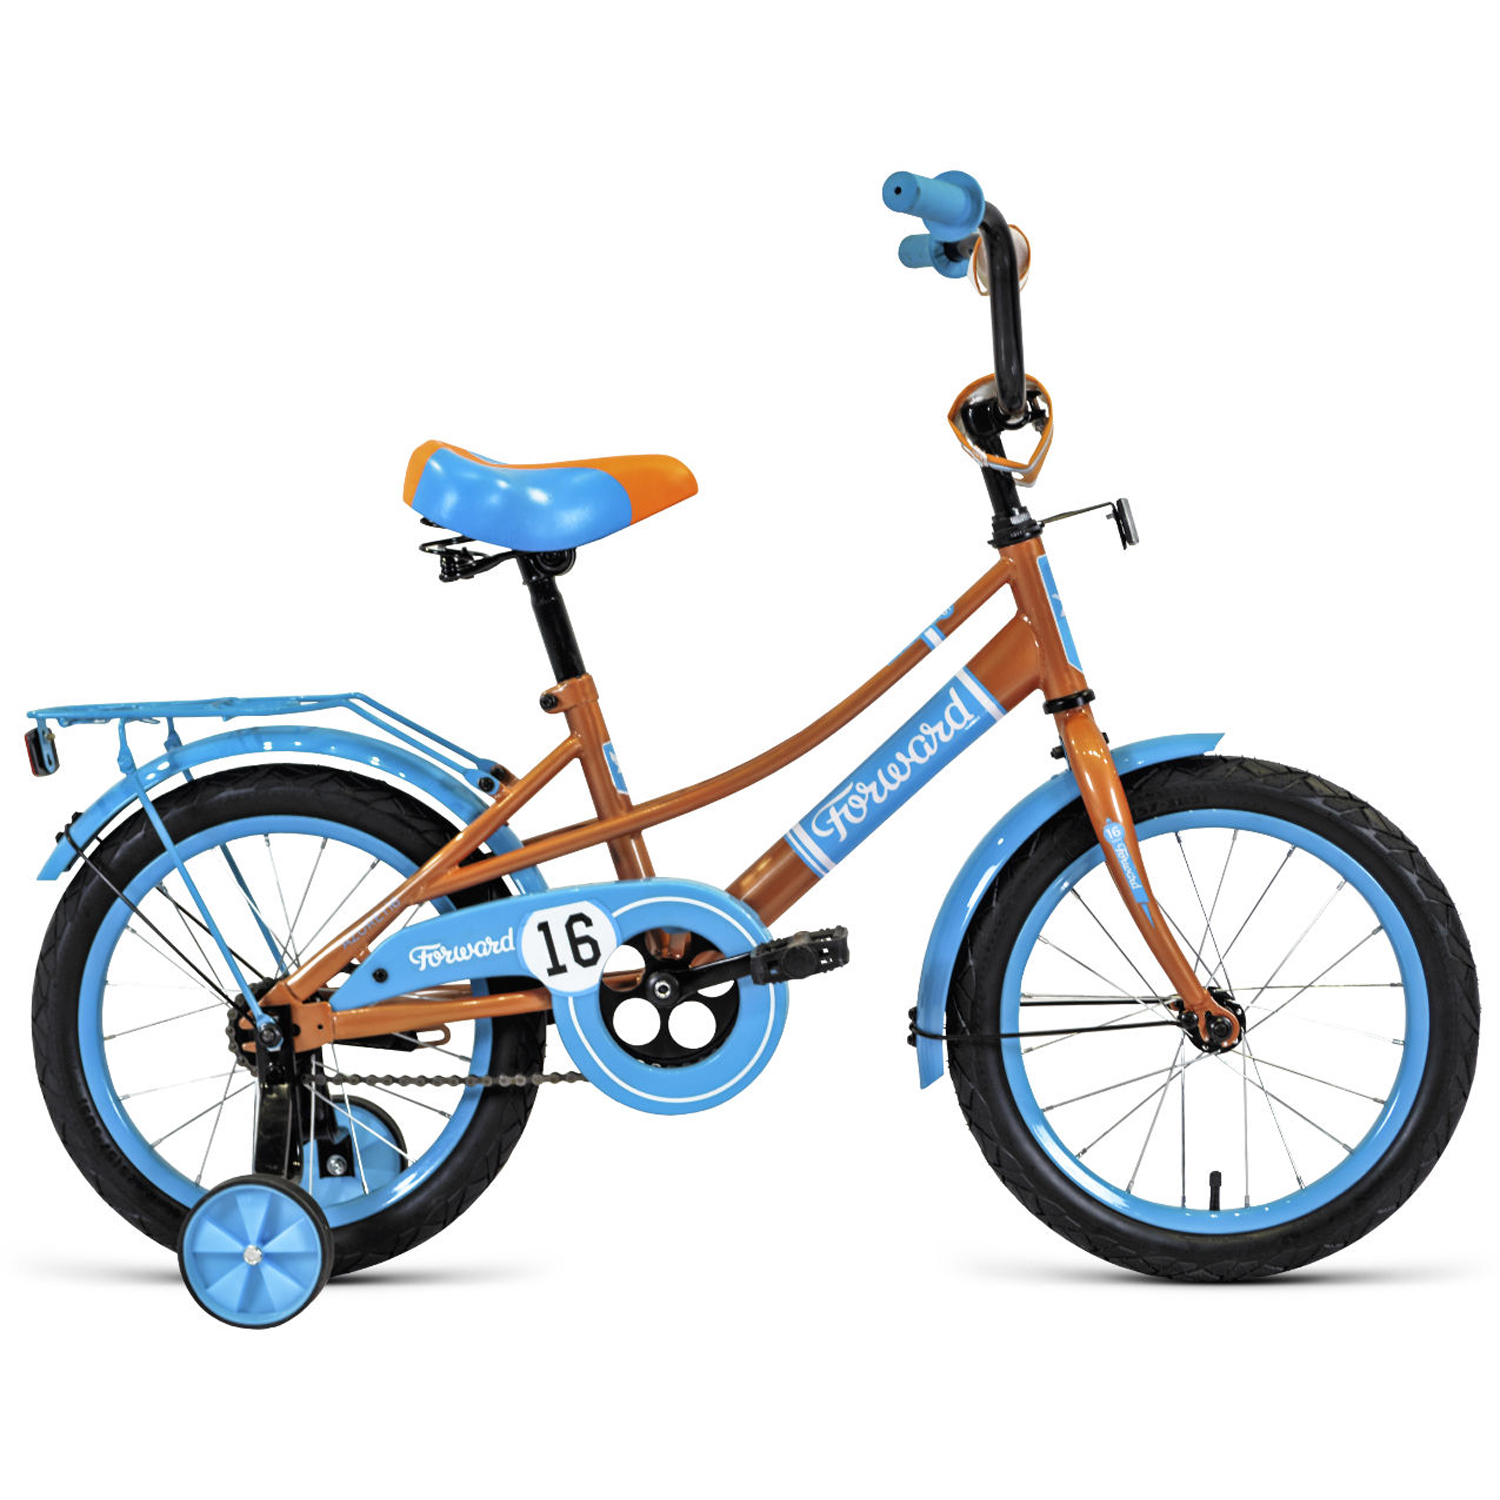 Двухколесный велосипед Forward Azure 16 2021, бежевый/голубой велосипед двухколесный forward cosmo 14 2021